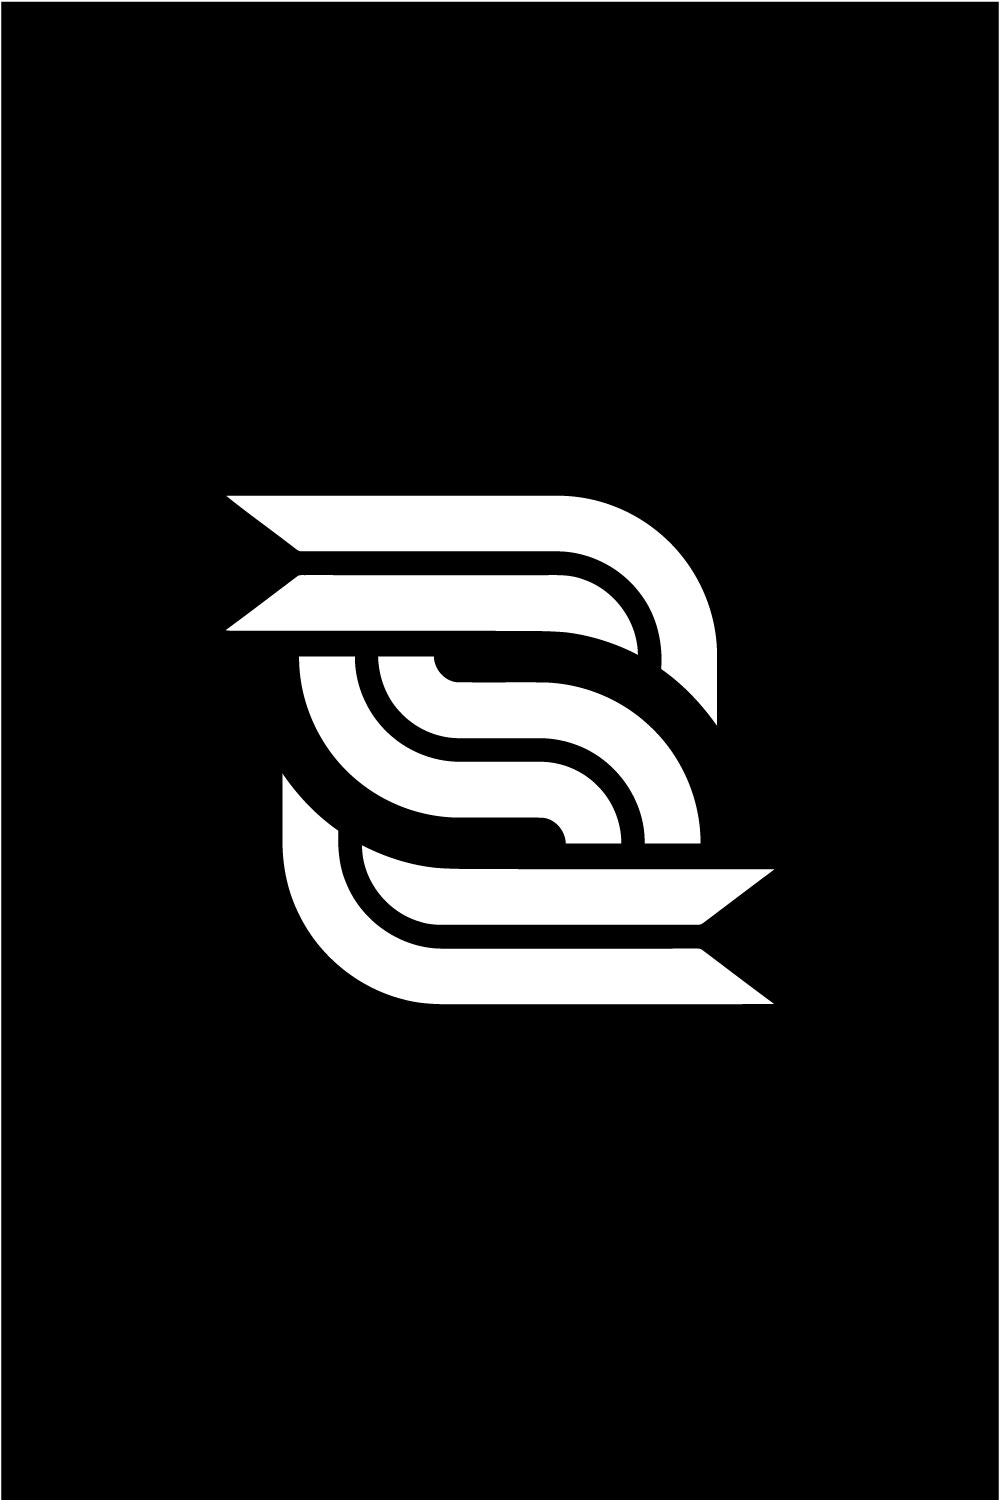 S Lettering Logo Design Pinterest image.